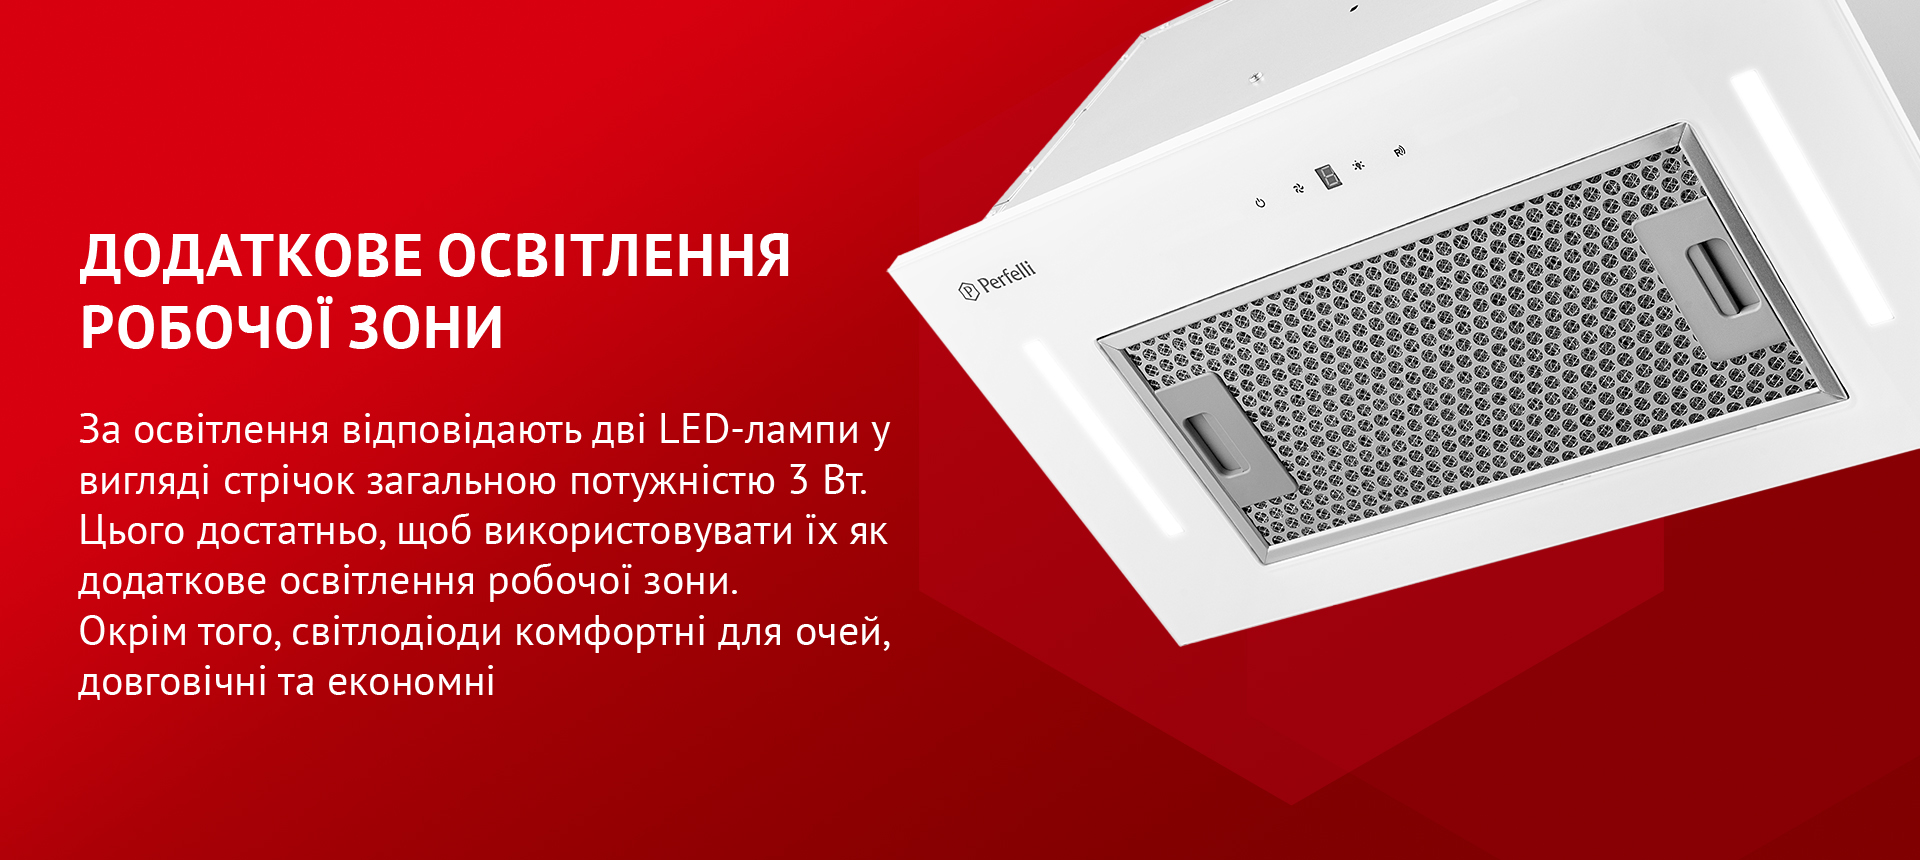 За освітлення відповідають дві LED-лампи у вигляді стрічок загальною потужністю 3 Вт. Цього достатньо, щоб використовувати їх як додаткове освітлення робочої зони. Окрім того, світлодіоди комфортні для очей, довговічні та економні